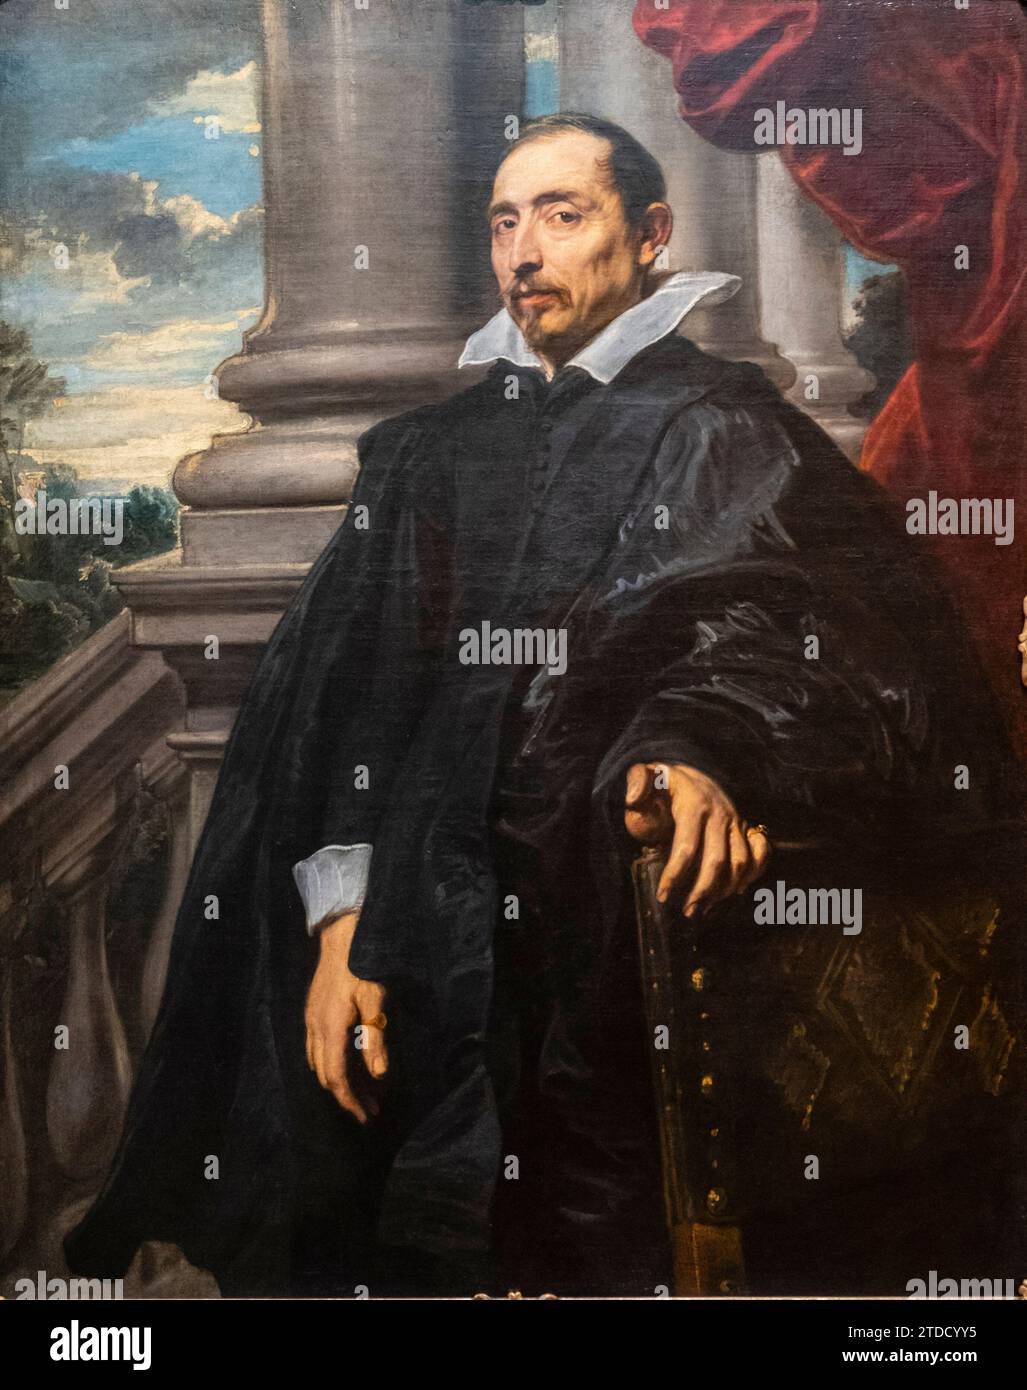 retrato de hombre, anton Van Dyck, Flandes, 1620-1621, Fundación Calouste Gulbenkian,  («Fundação Calouste Gulbenkian»), Lisboa, Portugal Stock Photo